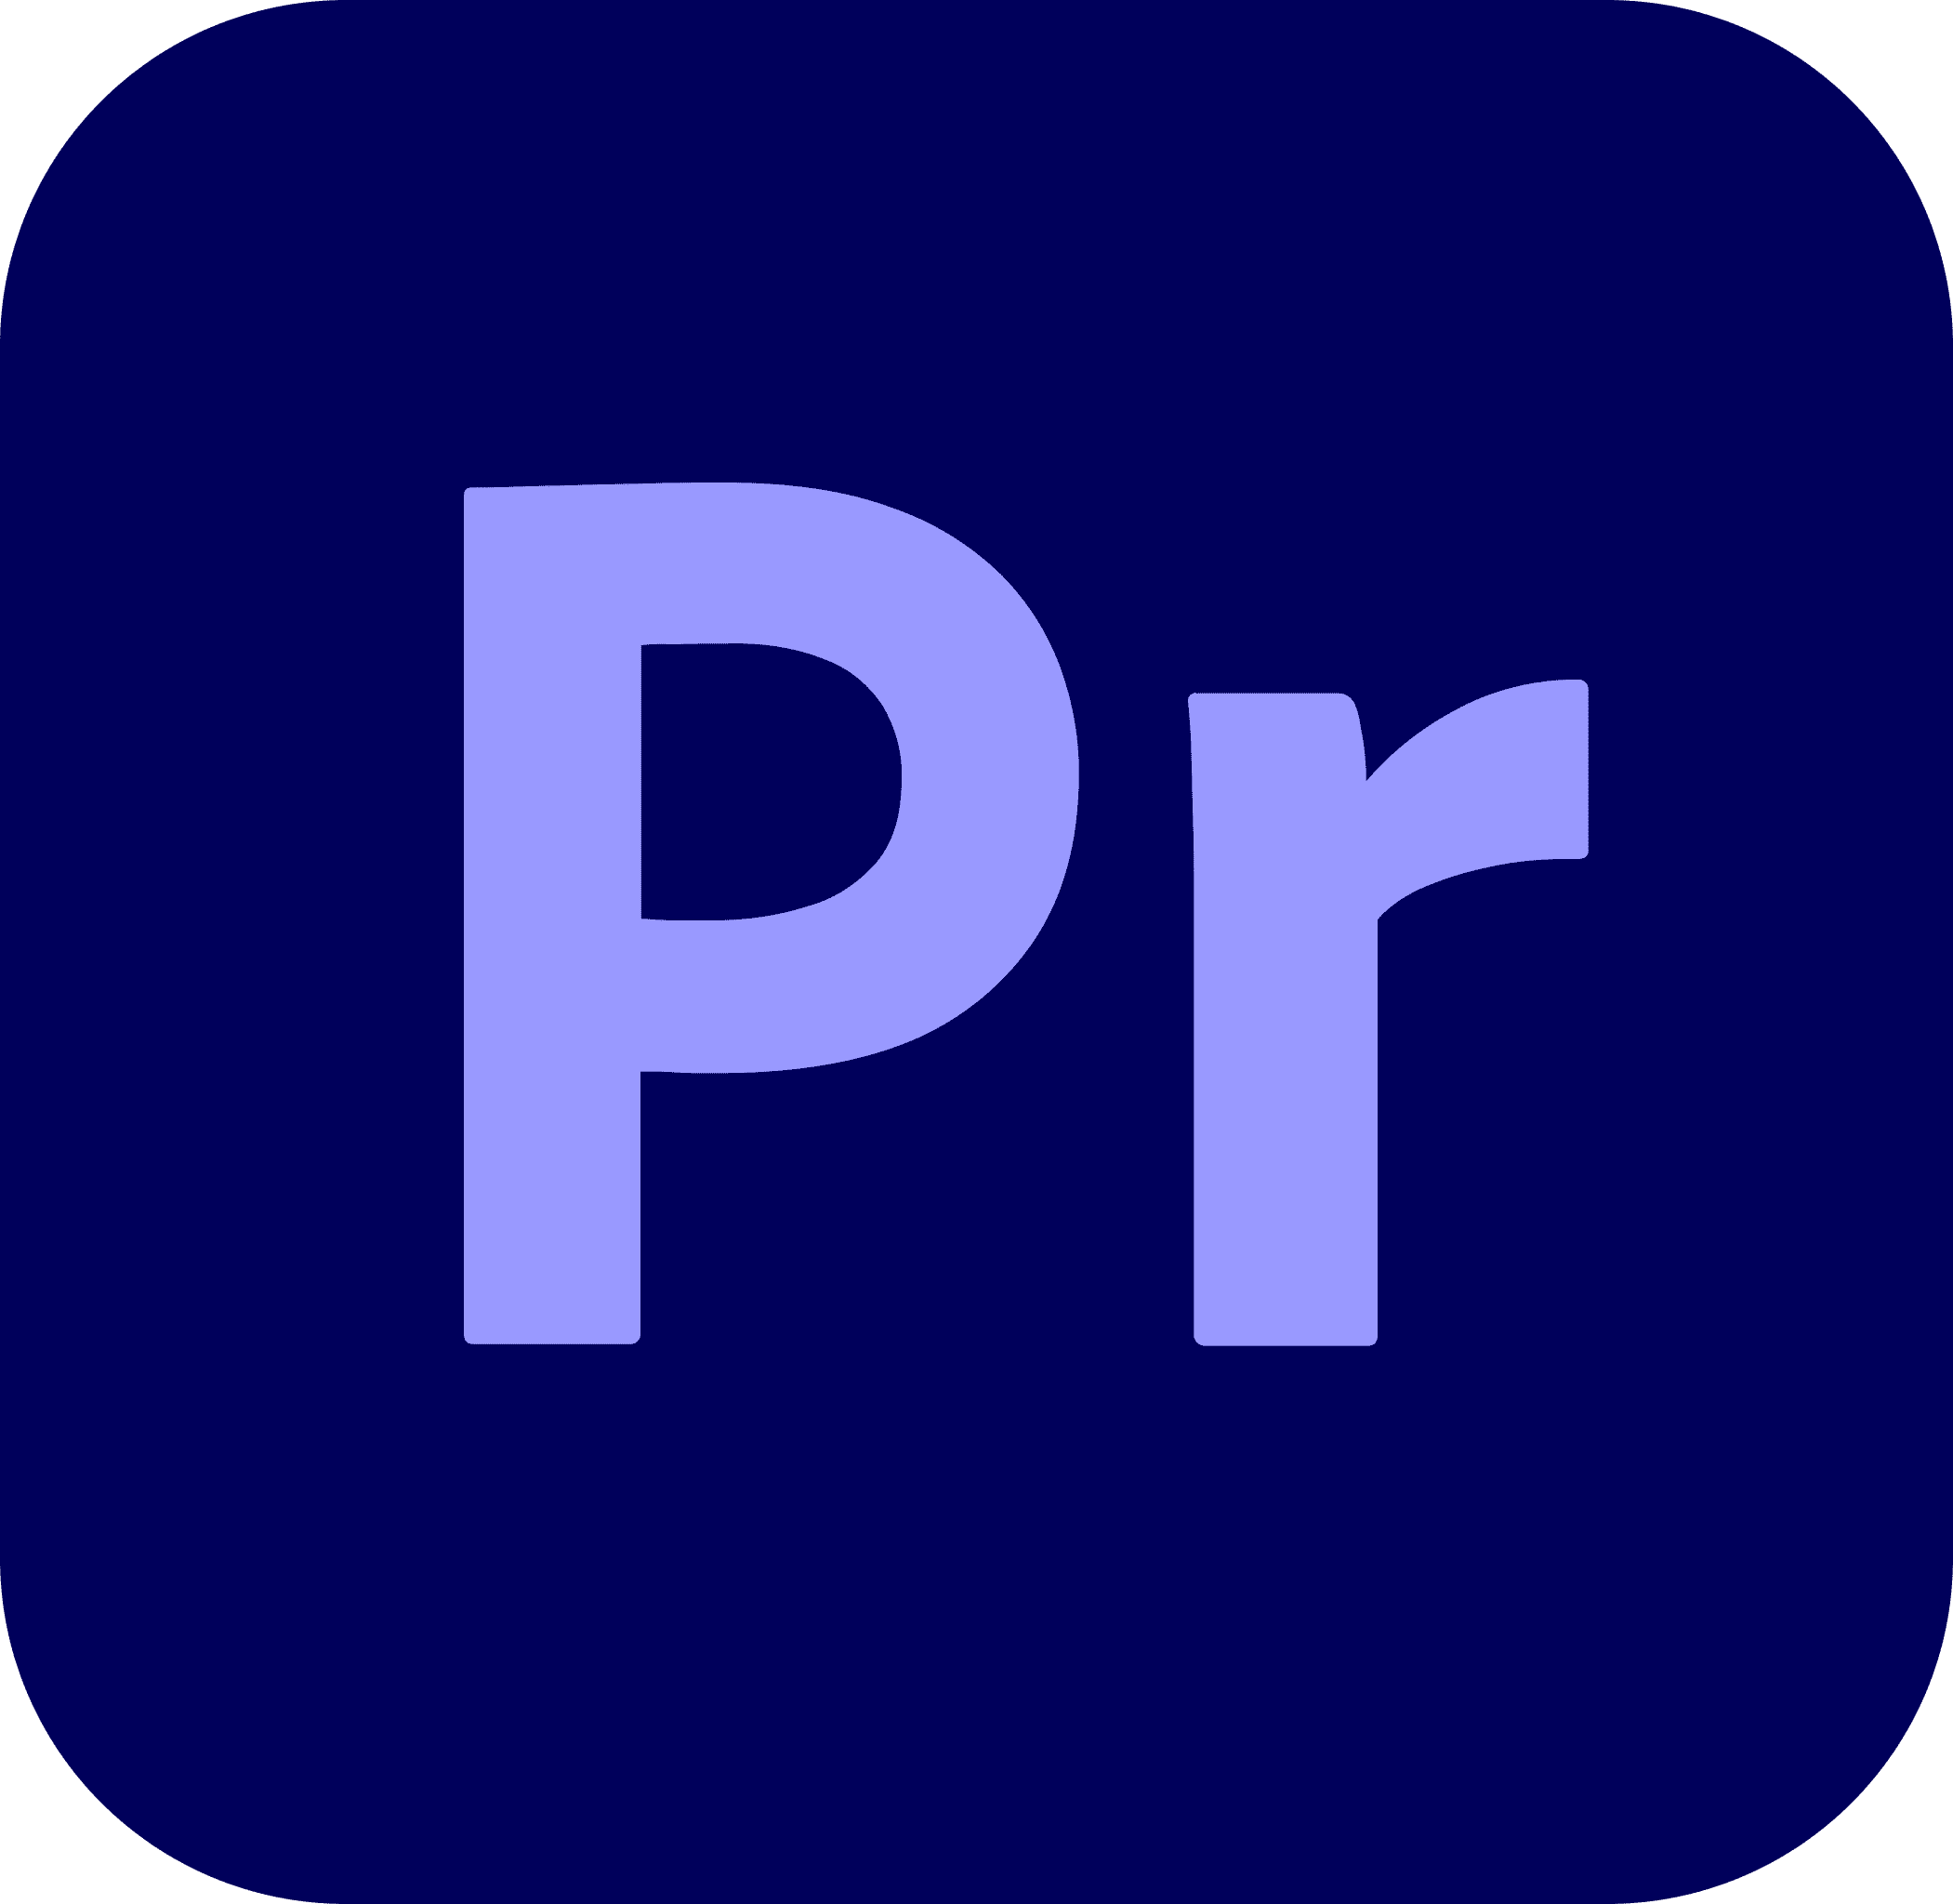 Adobe Premiere Pro CC Icon